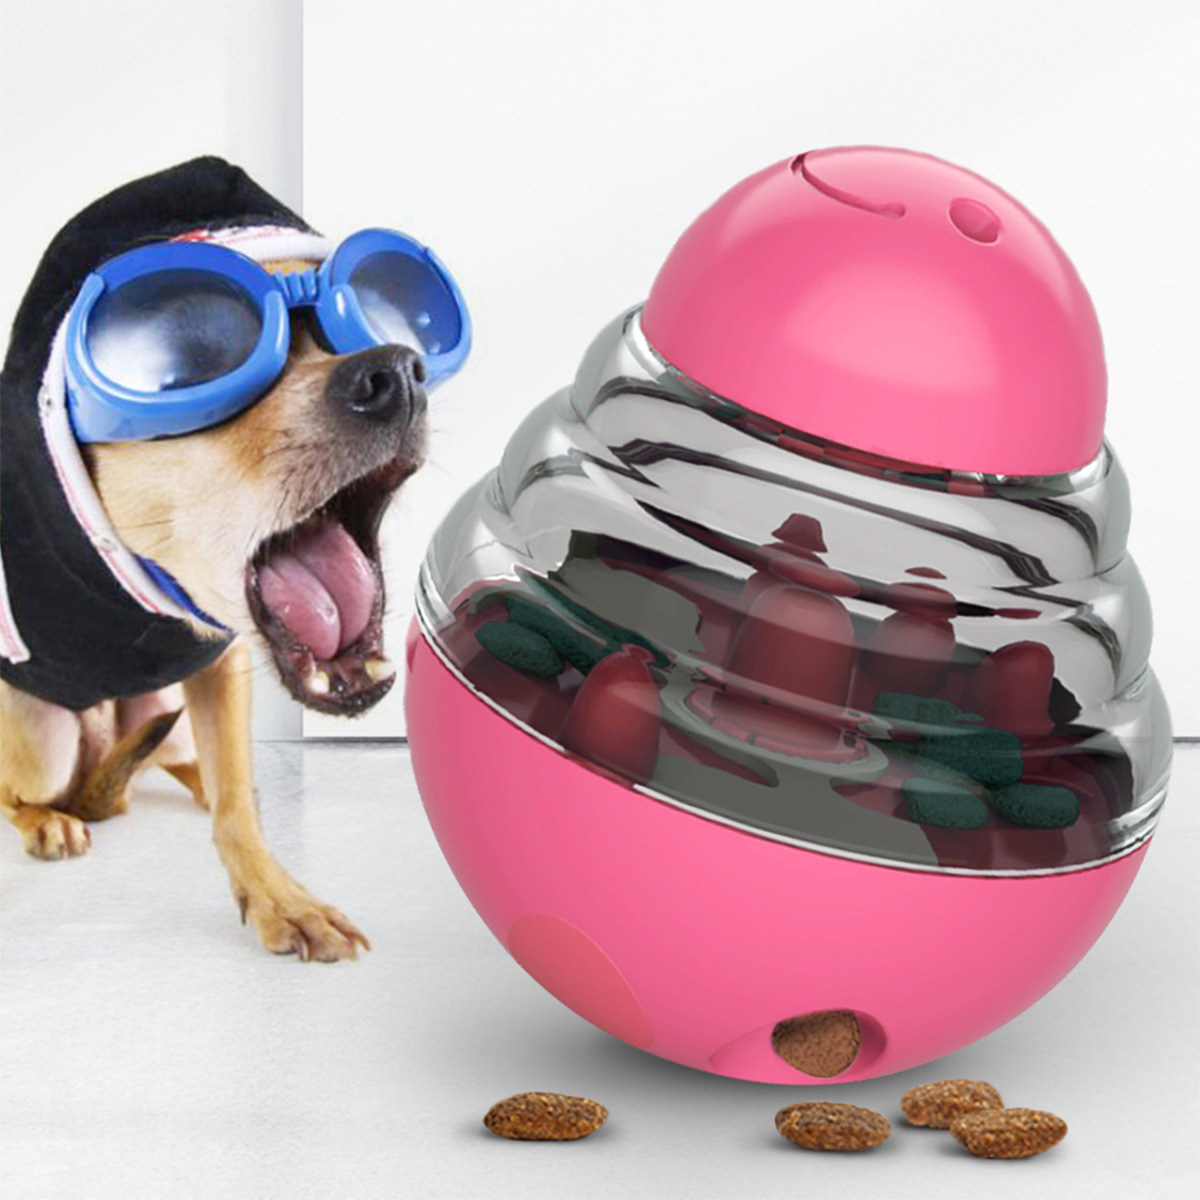 מכירה חמה דליפת חיות מחמד צעצוע מזון אינטראקטיבי מתקן מזון לכלבים צעצועים מזין חיות מחמד צעצועי כדור פינוק